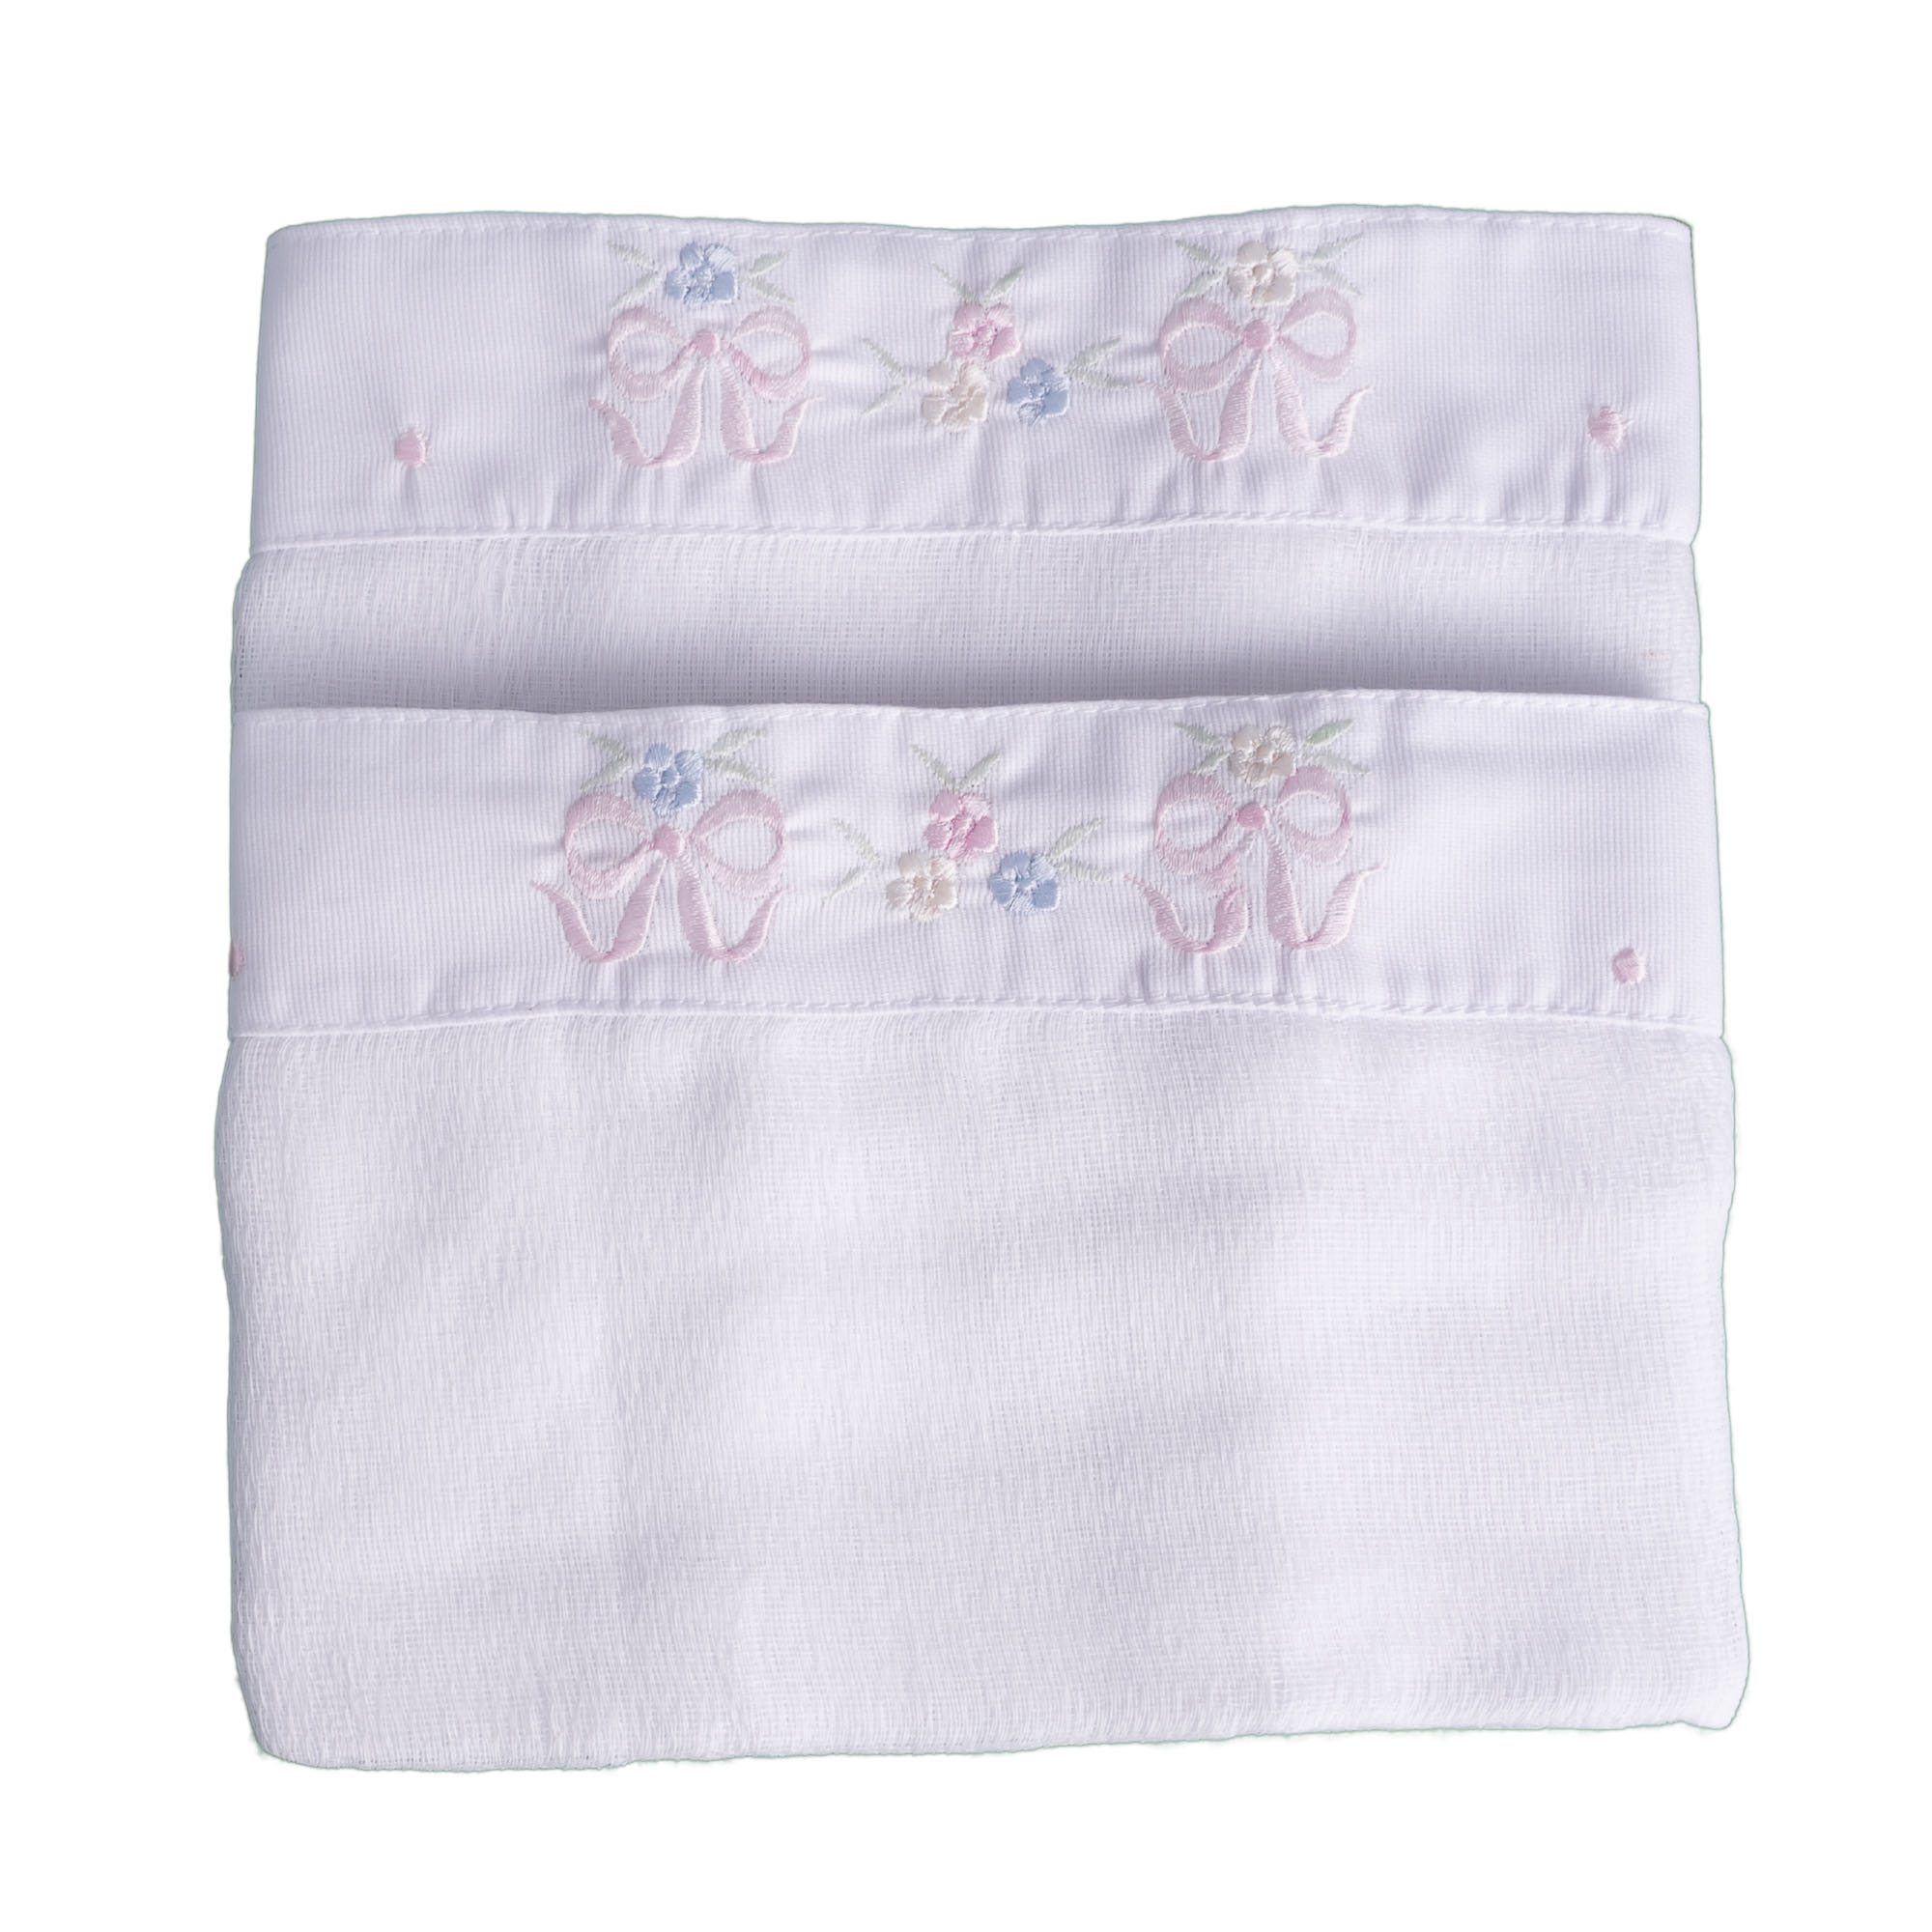 Toalha de ombro floral - Branco